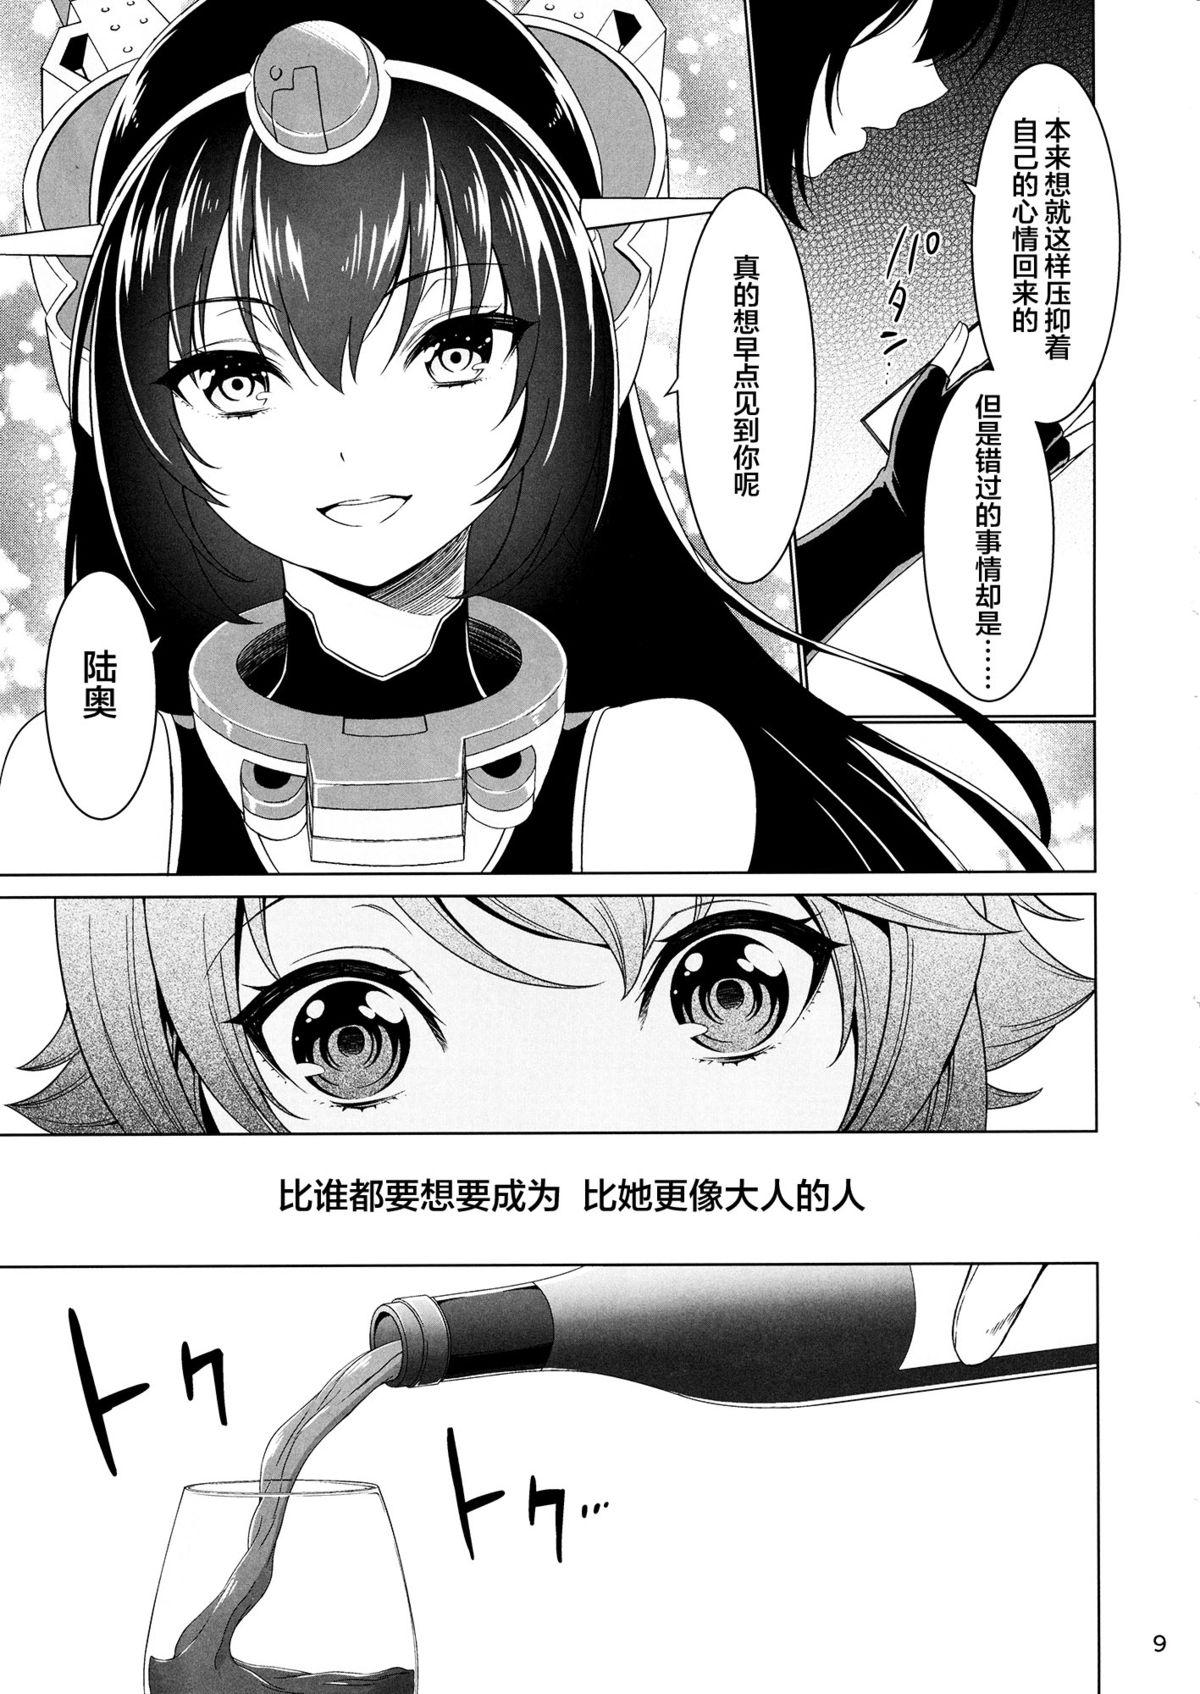 Flagra "Onee-san" ja Irarenai - Kantai collection Spy Camera - Page 9